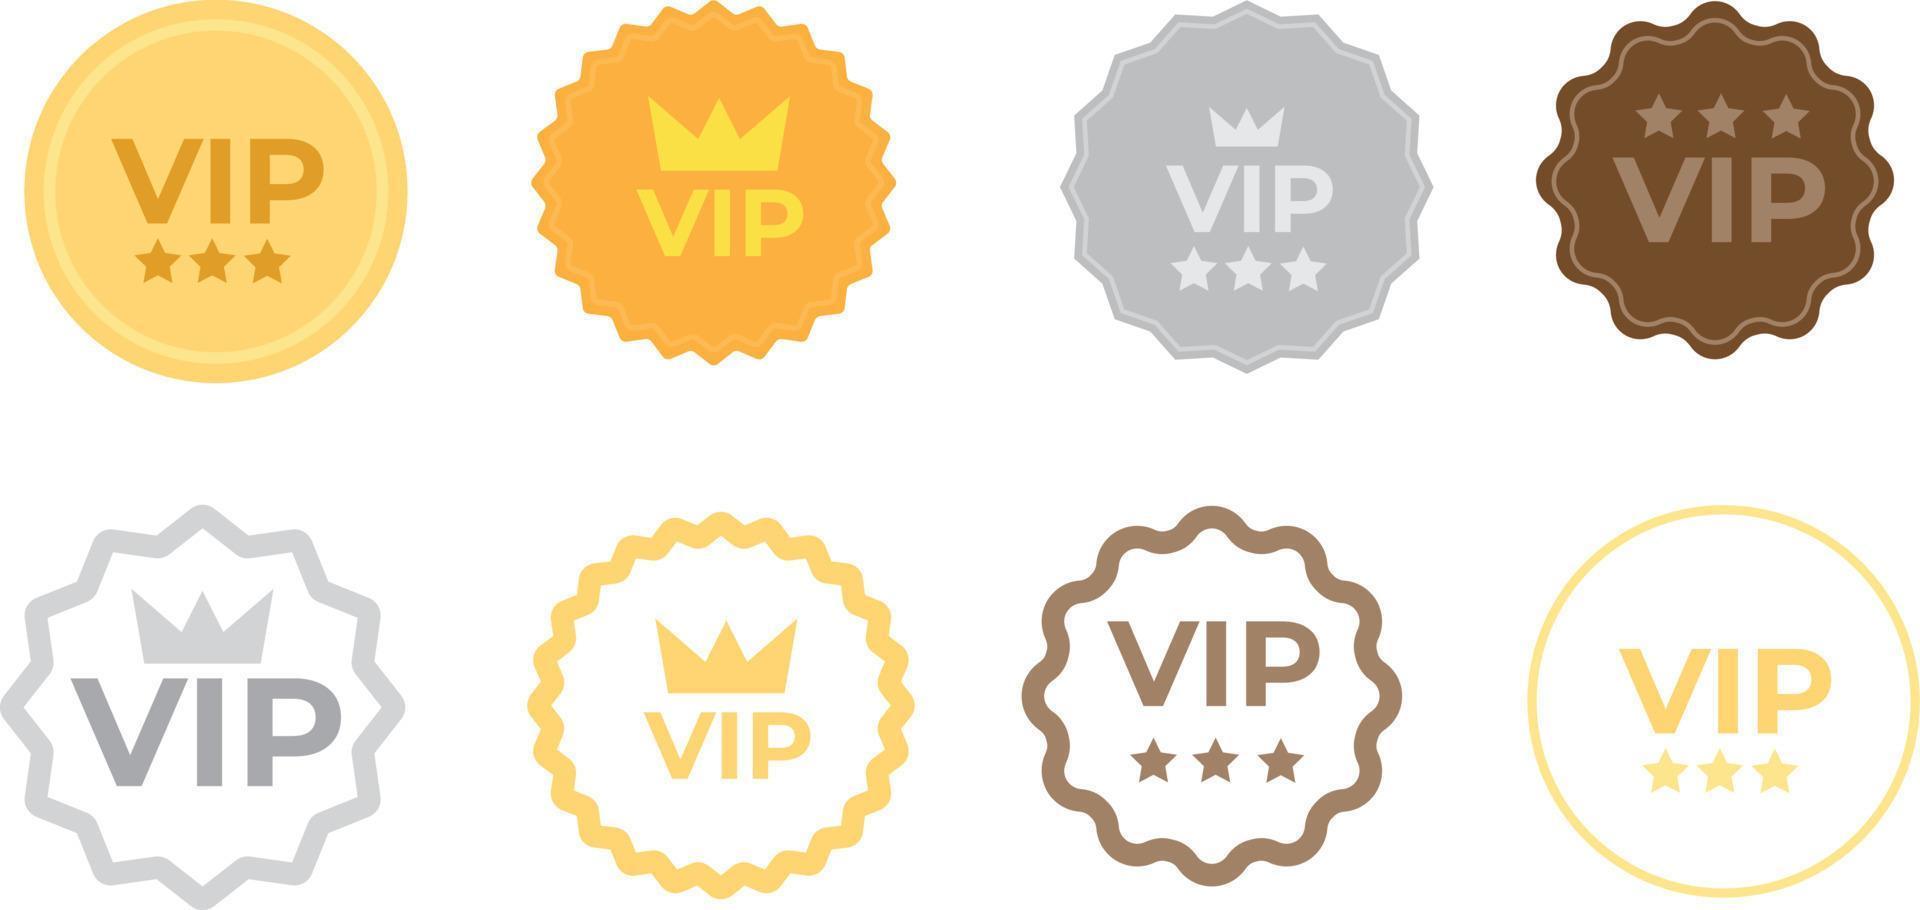 définir des badges vip en couleur or, argent et bronze. étiquette ronde avec trois niveaux vip. illustration vectorielle moderne vecteur